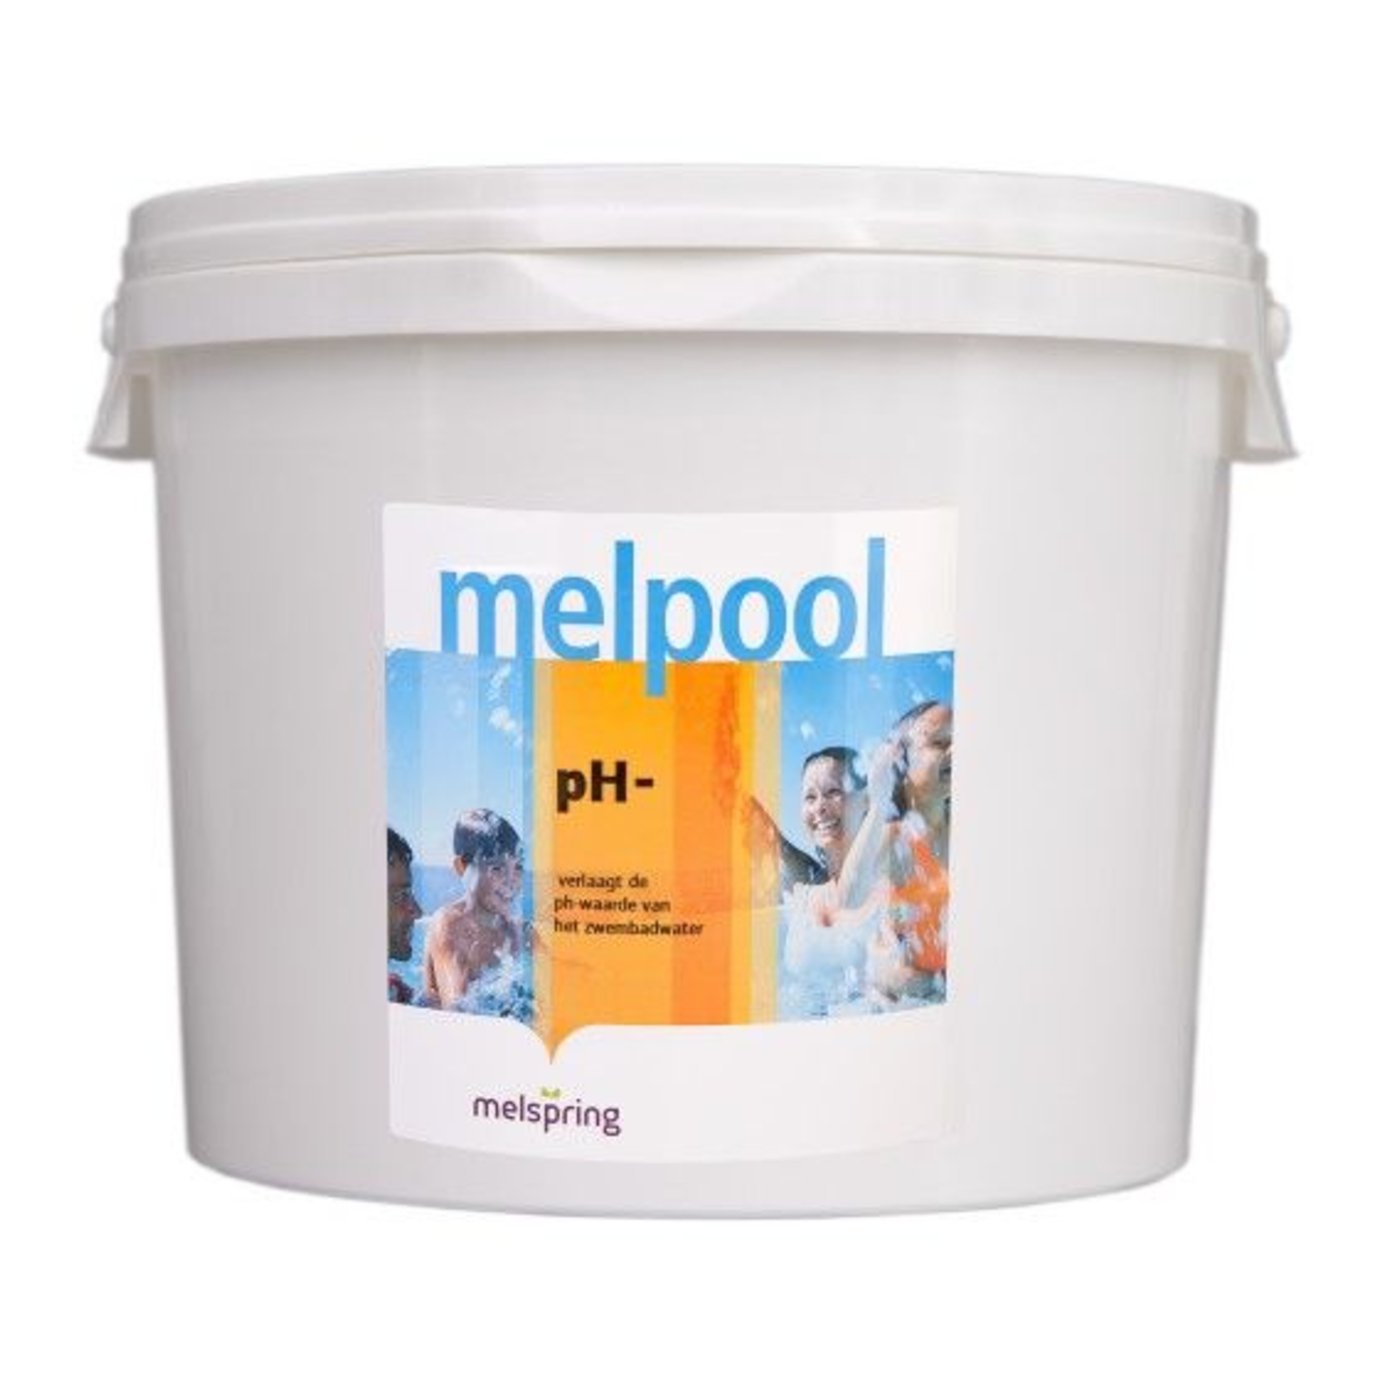 pH-Minus-Pulver 7 kg - Melpool